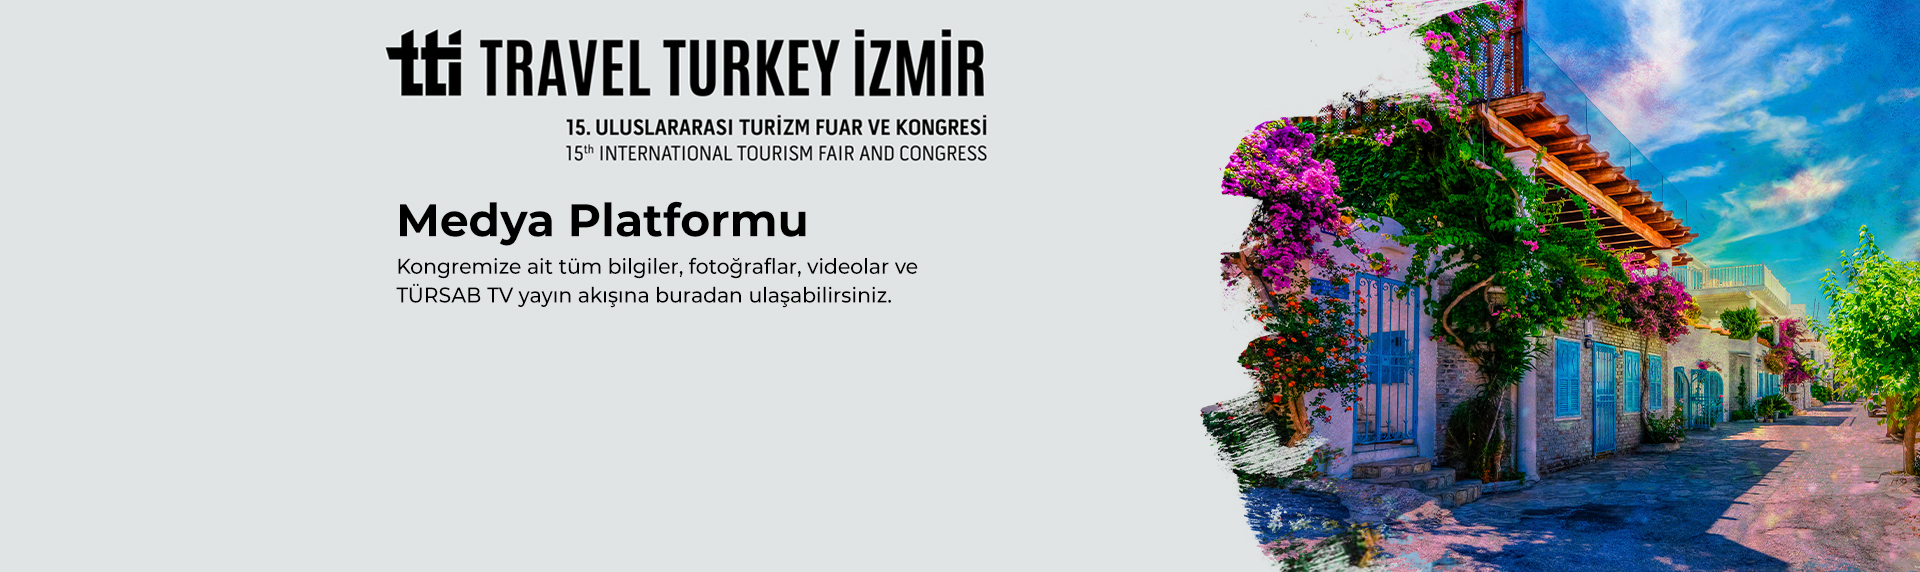 https://www.tursab.org.tr/duyurular/15-travel-turkey-izmir-turizm-fuari-ve-kongresi-tti-outdoor-fuari-medya-platformu